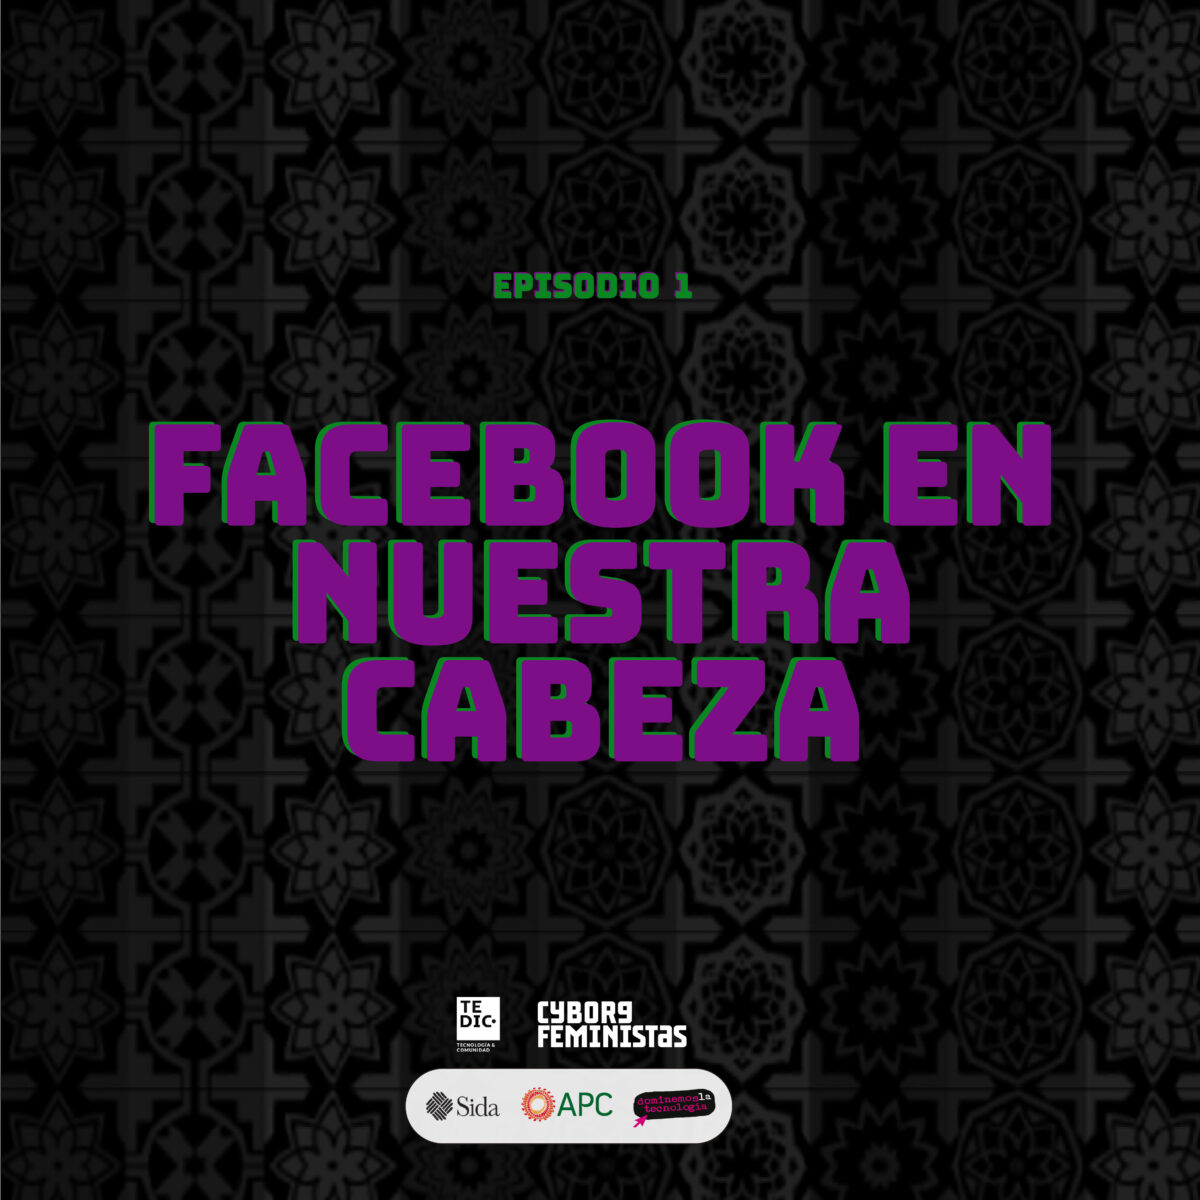 Facebook-en-nuestra-cabeza-1200x1200